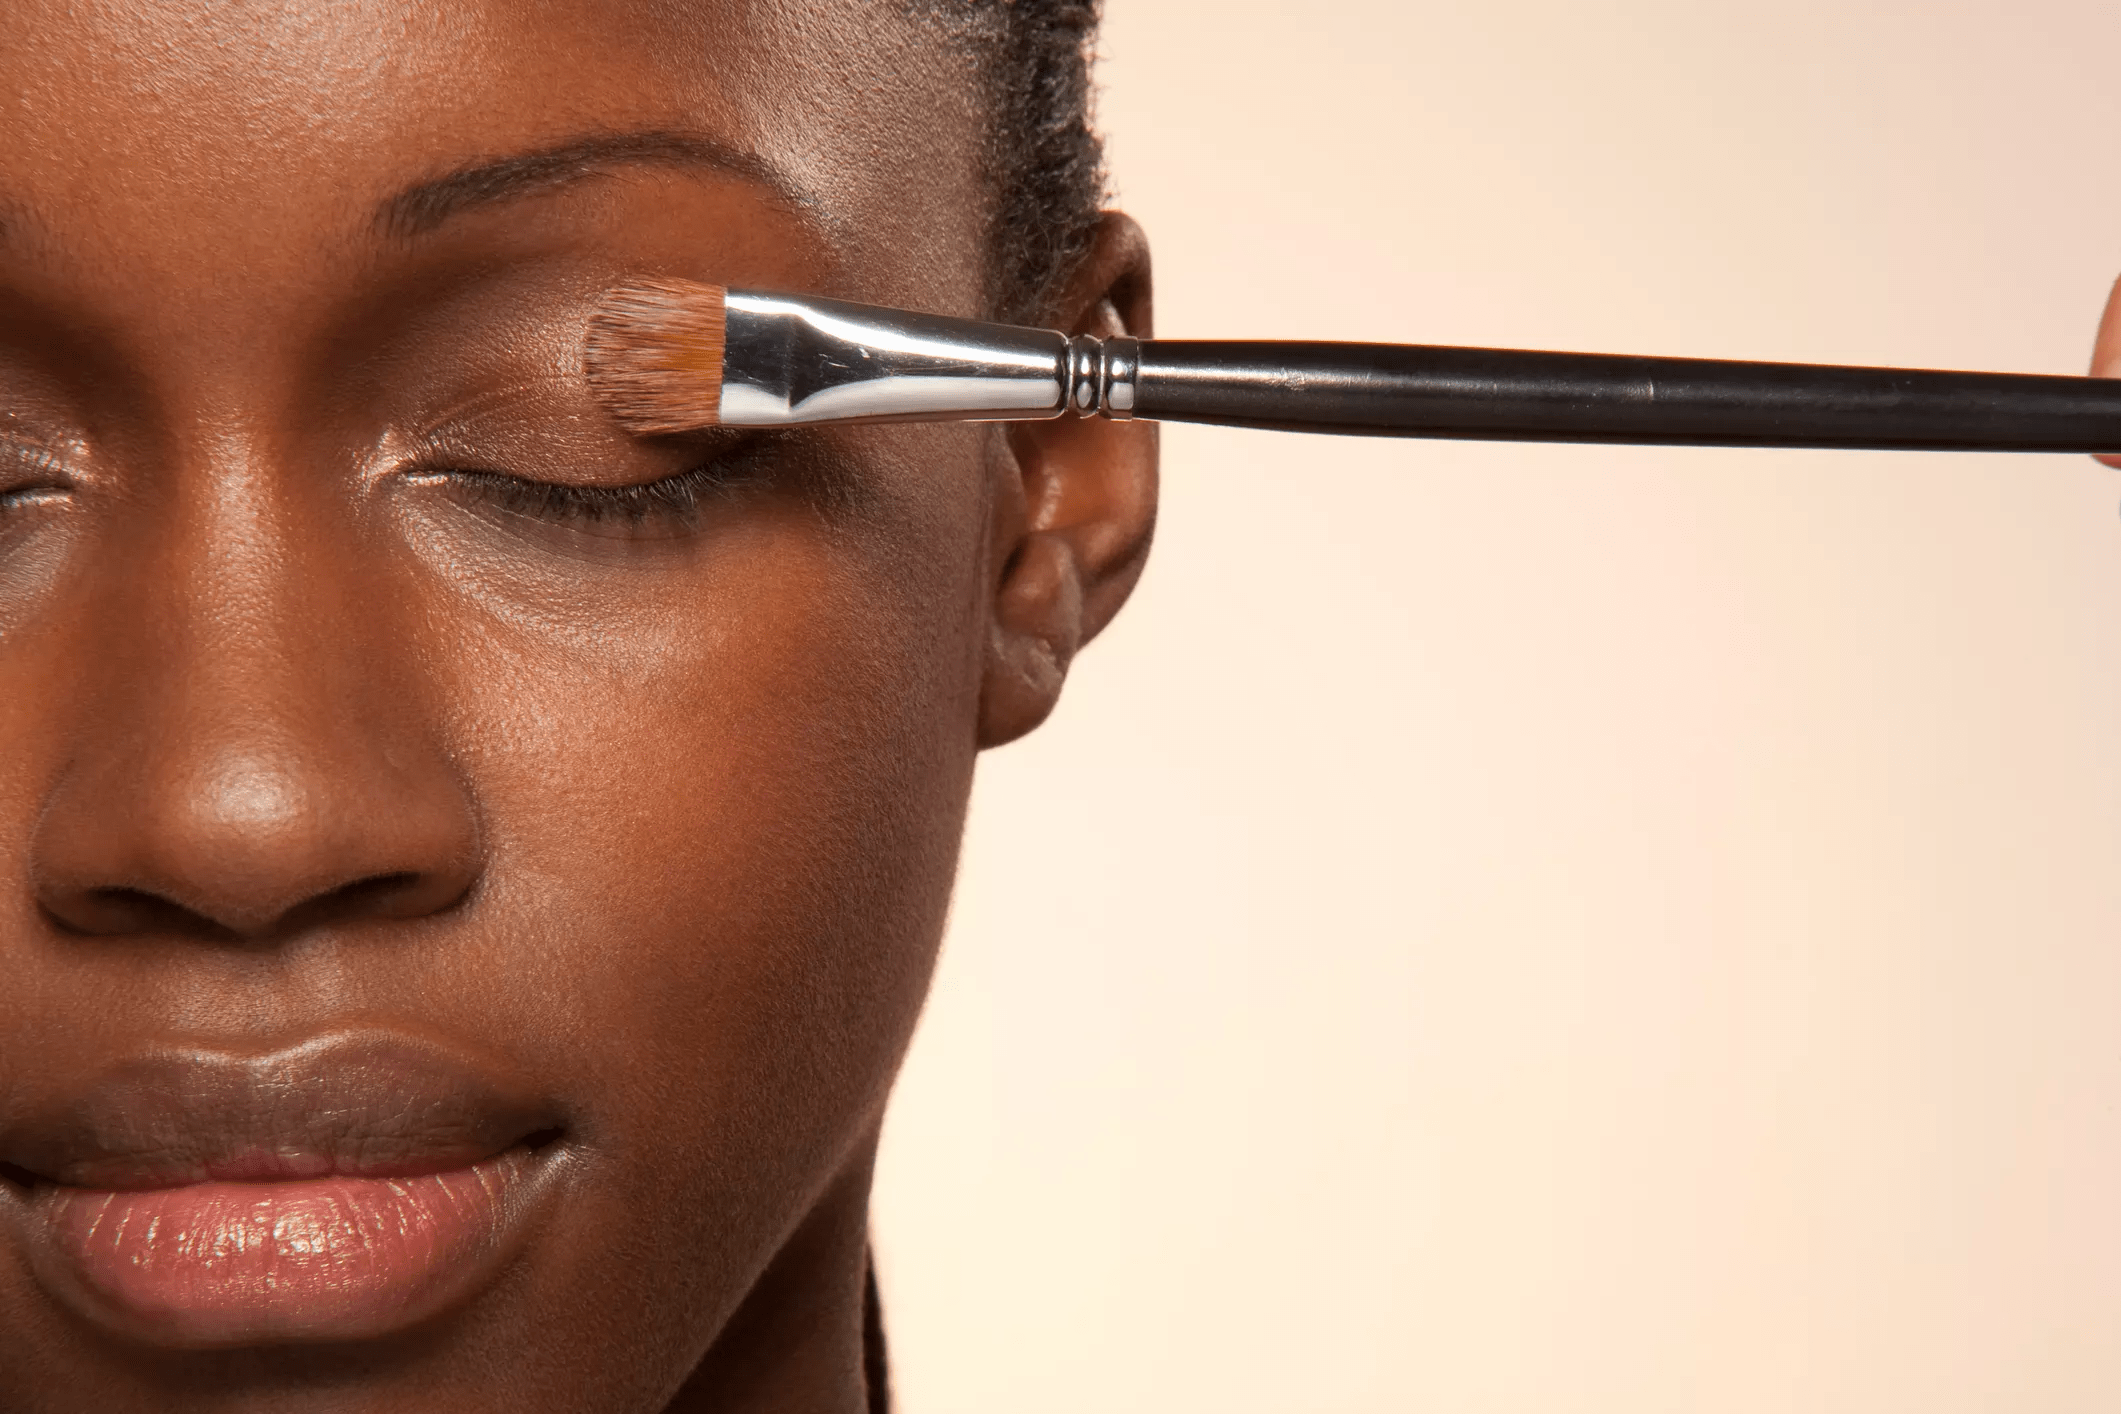 Maquiagem em pele seca: dicas para evitar o efeito craquelado